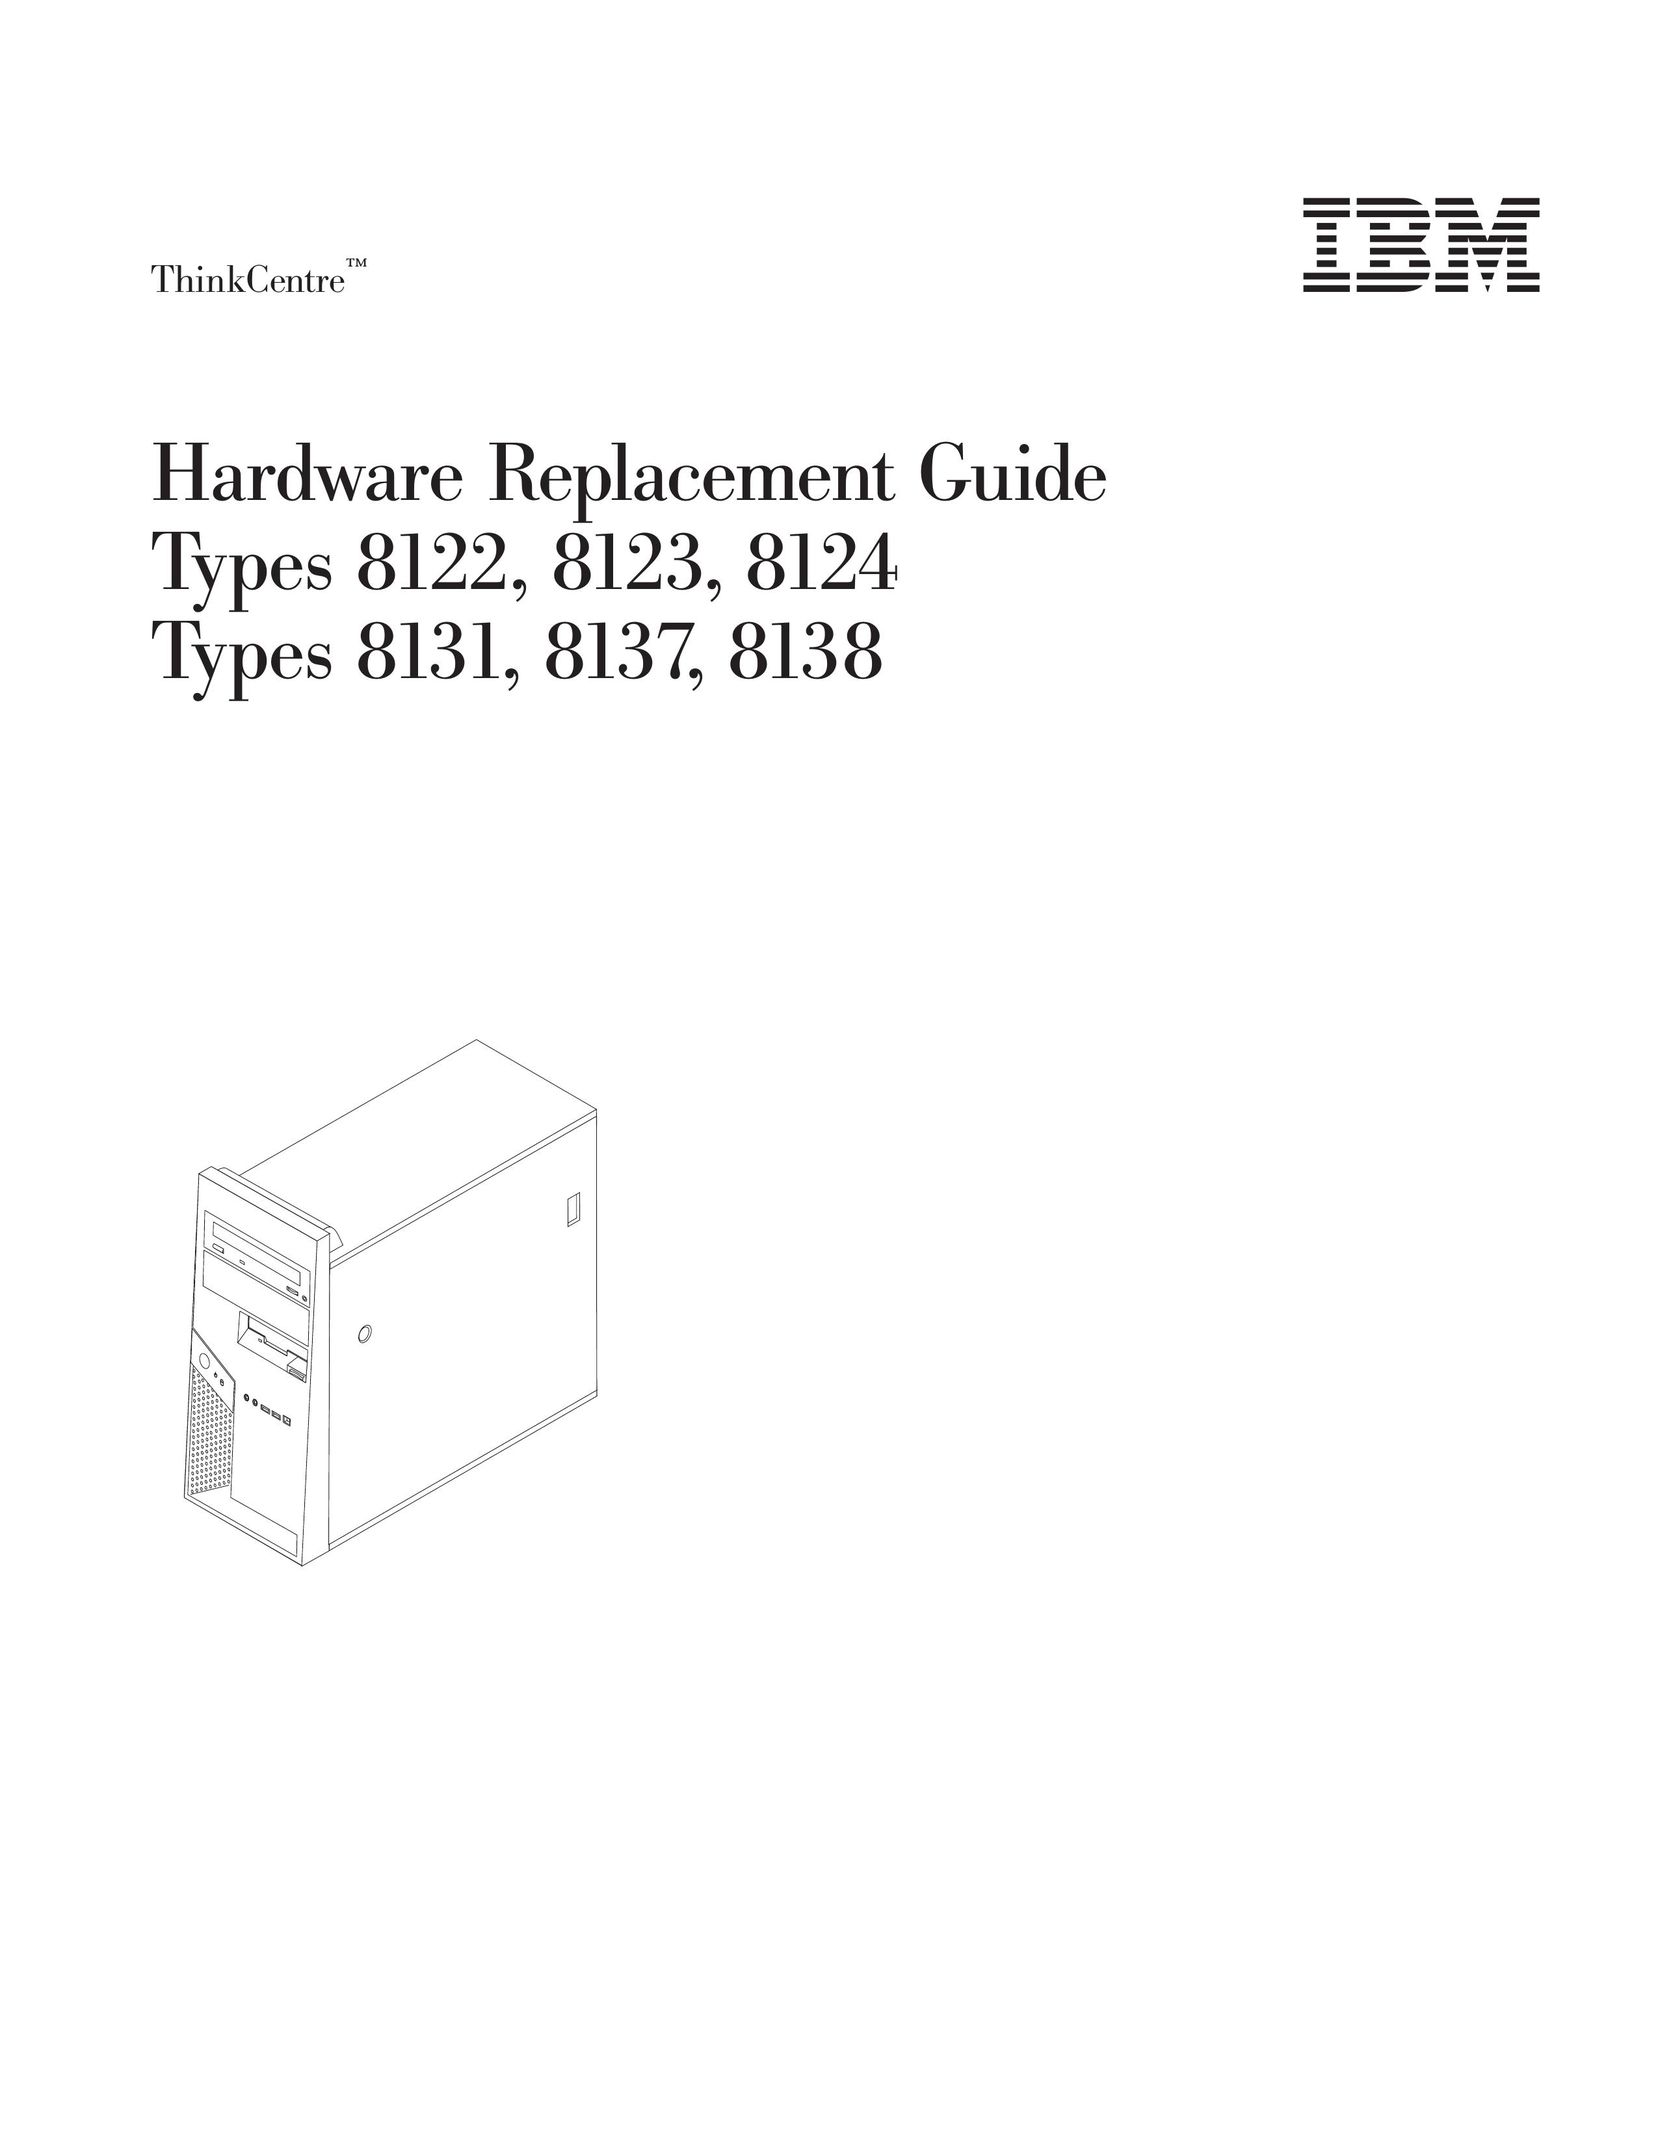 IBM 8124 Computer Hardware User Manual